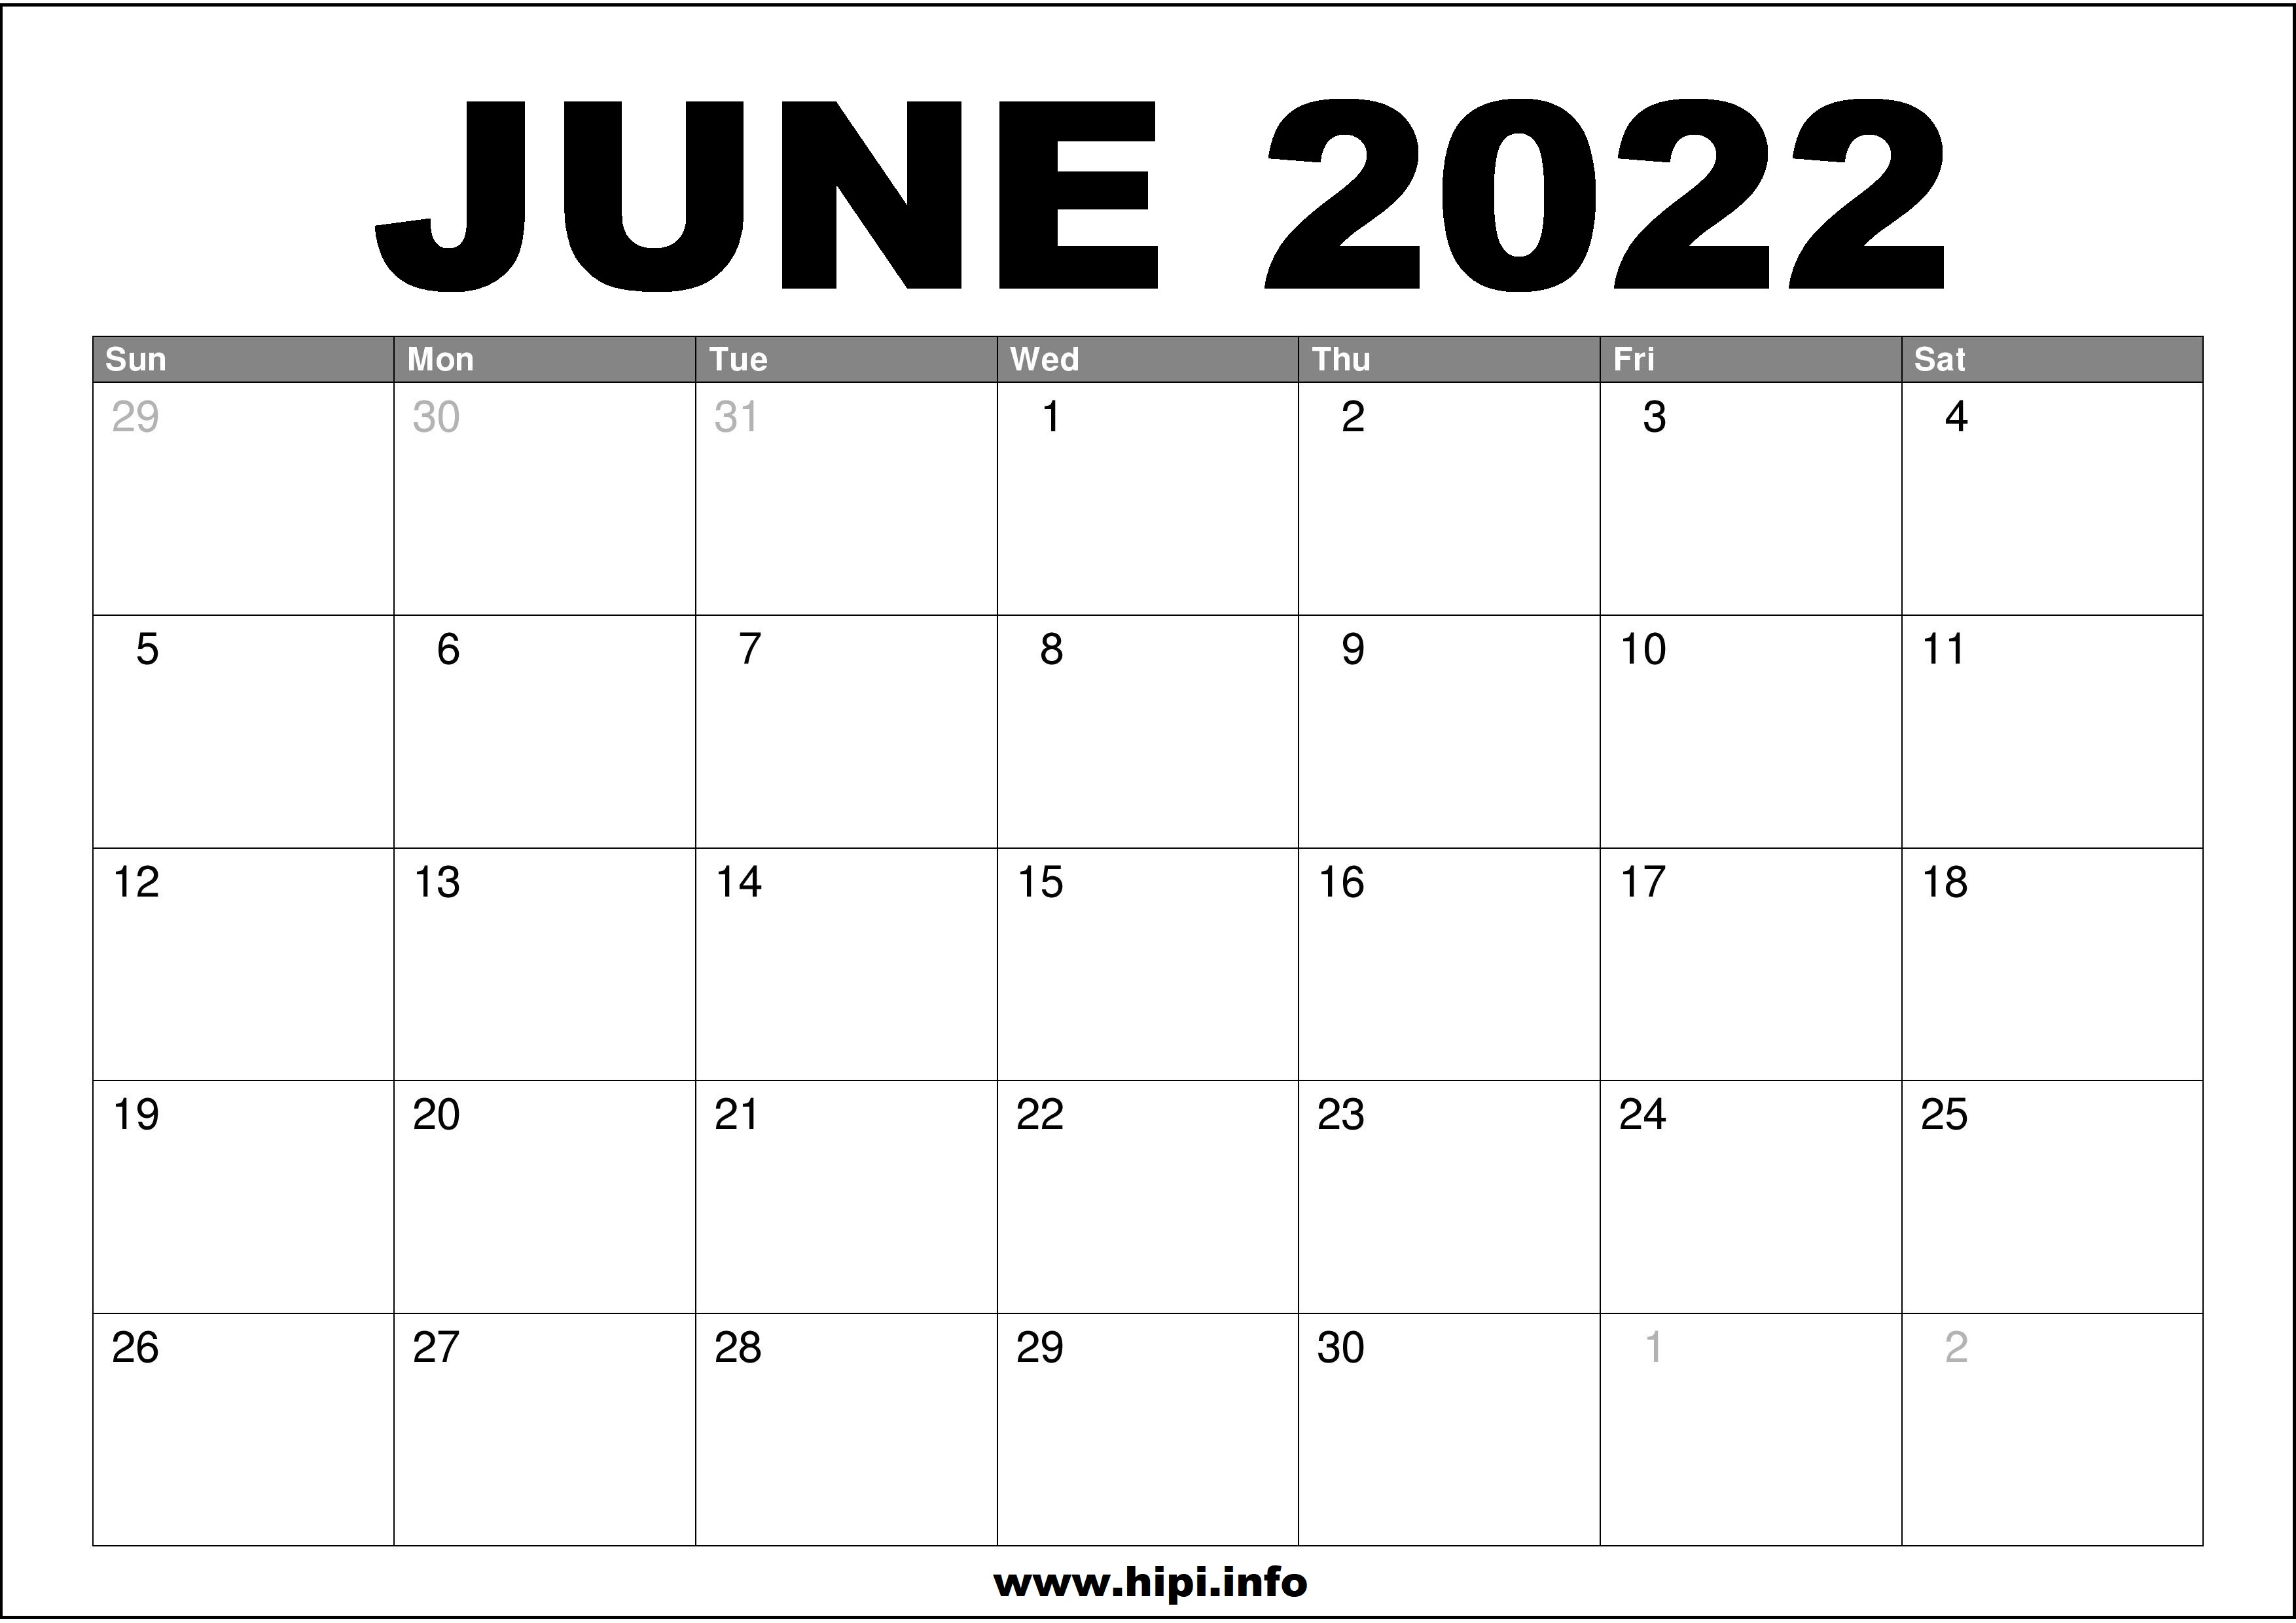 Free Calendar June 2022 June 2022 Calendar Printable Free - Hipi.info | Calendars Printable Free